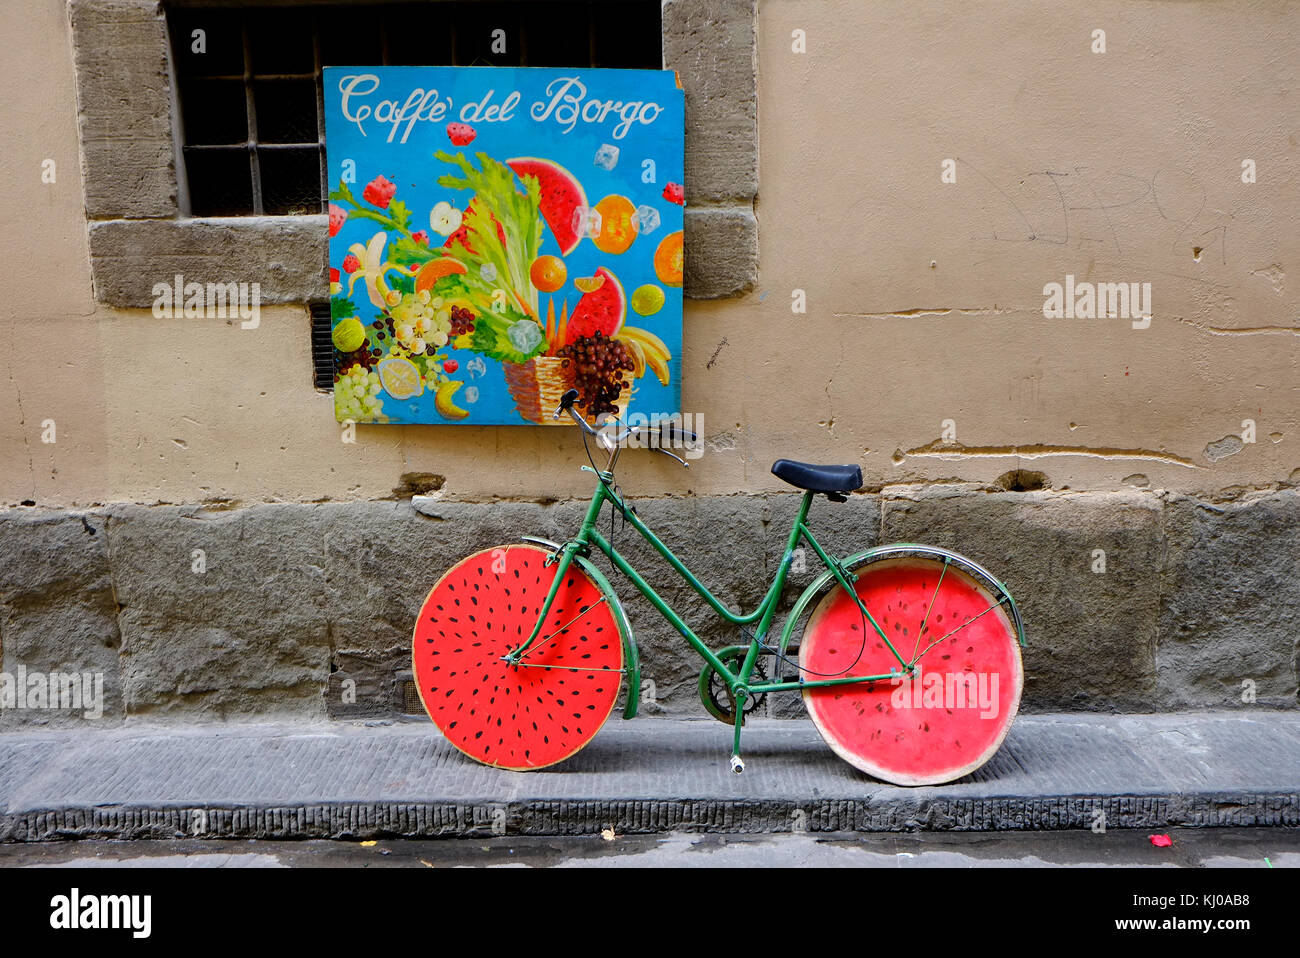 Fahrrad lehnte sich gegen die Wand mit Melone Wirkung Räder, Florenz, Italien Stockfoto